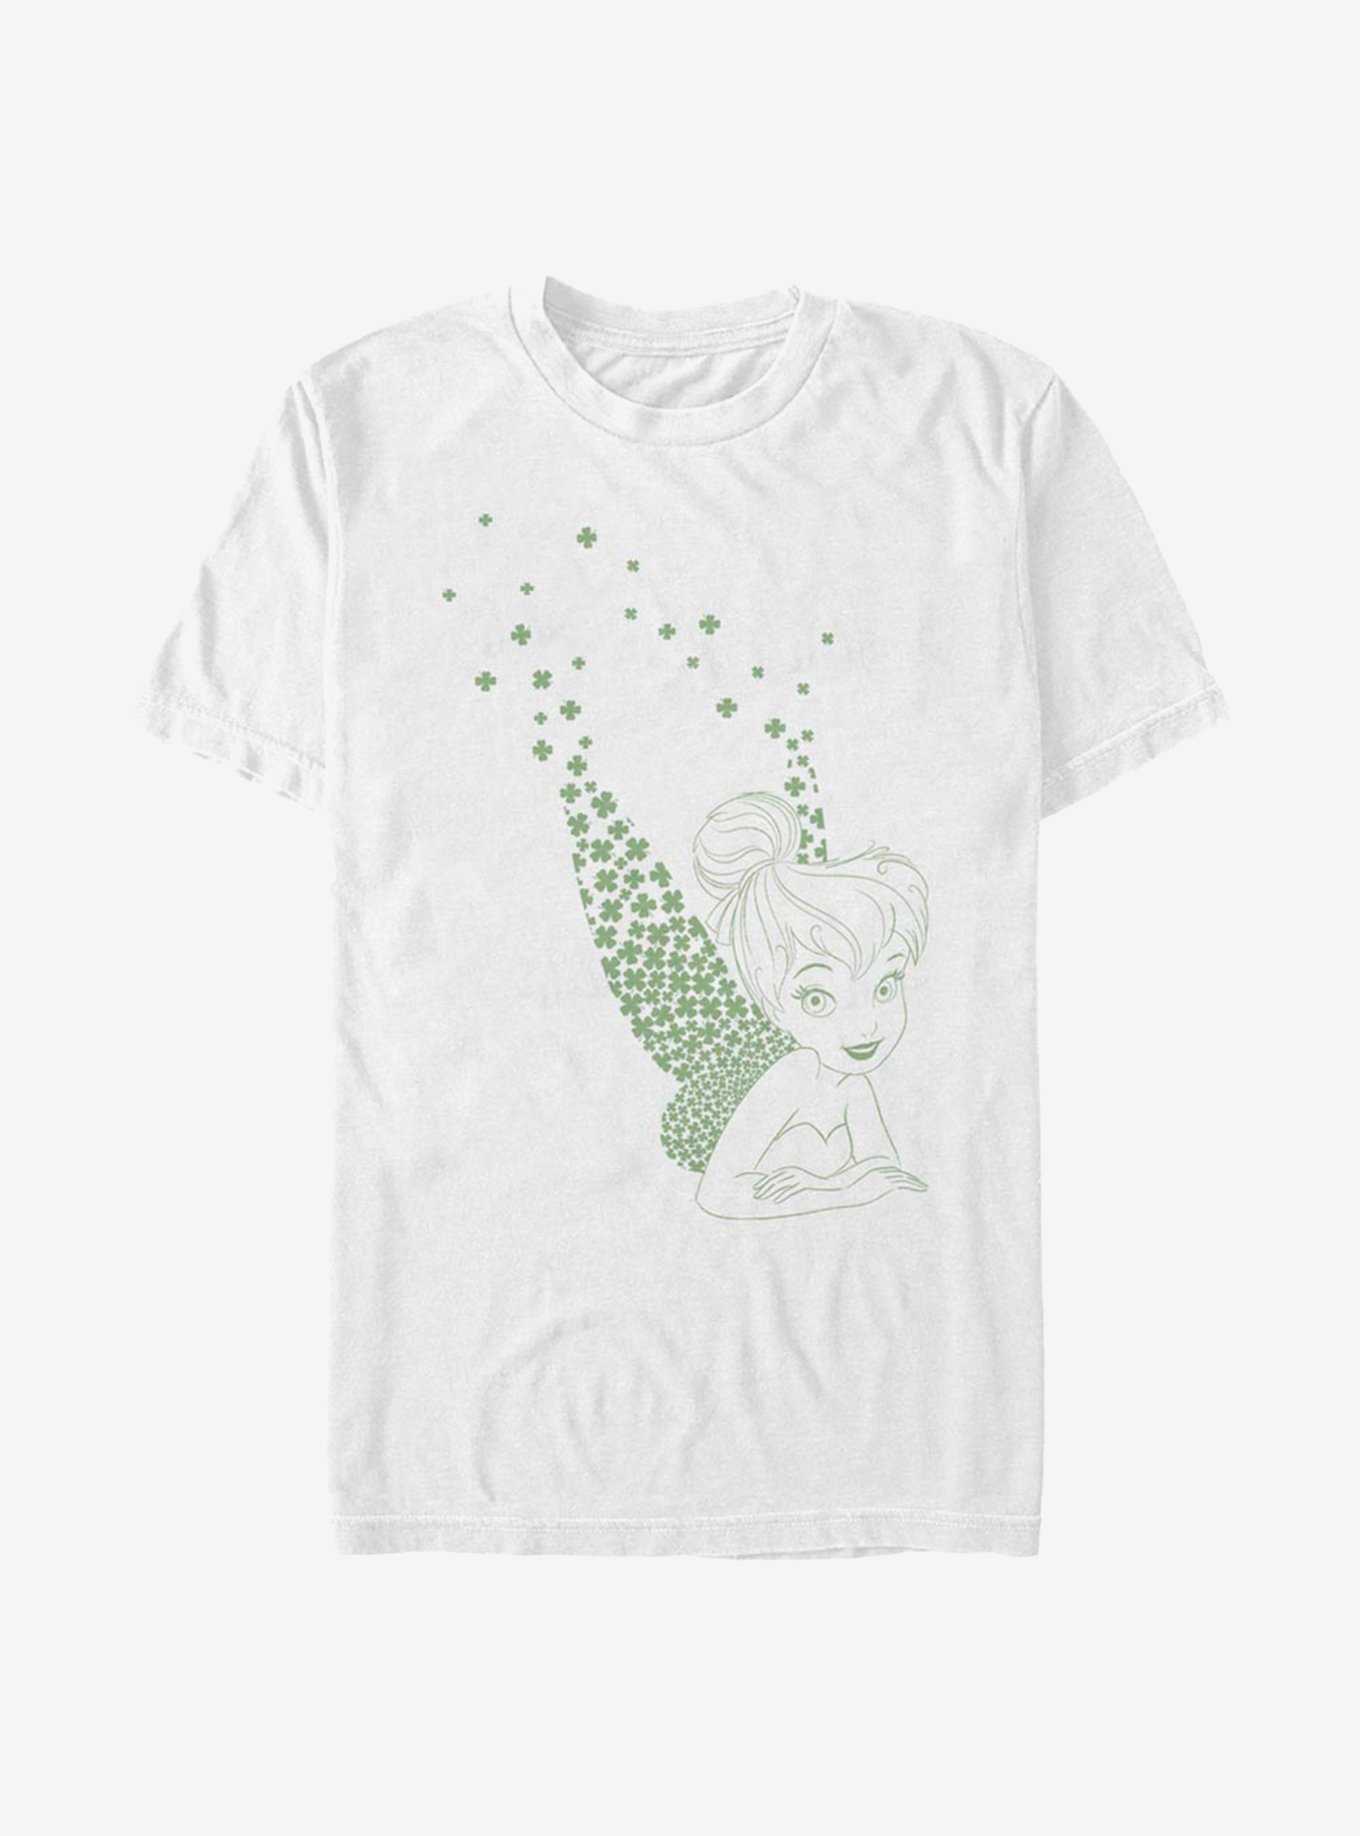 Disney Peter Pan Tink Clovers T-Shirt, , hi-res